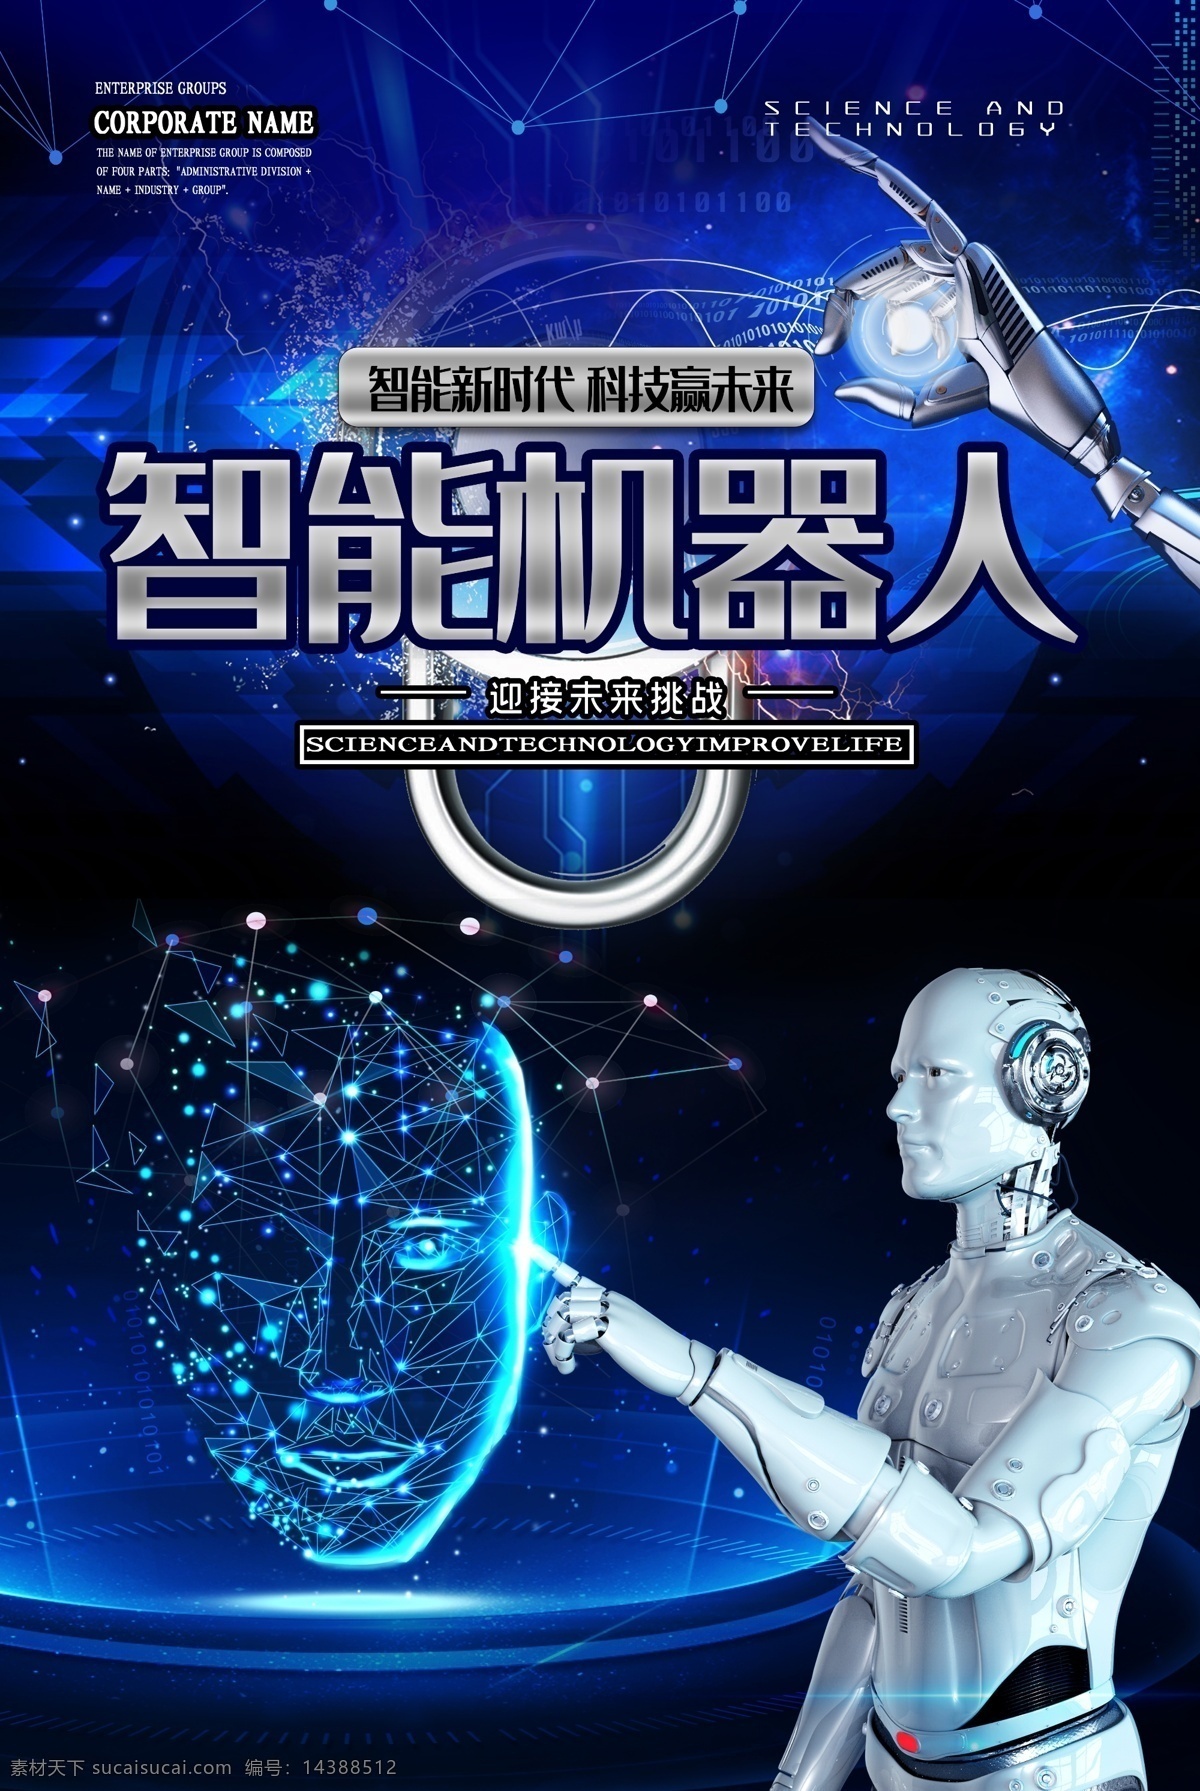 智能机器人 人工智能 人形机器人 未来机器人 科技 海报 机器人握手 人工智能创意 机器人 机器人展板 数码产品 人工智能设计 机器人海报 人工智能化